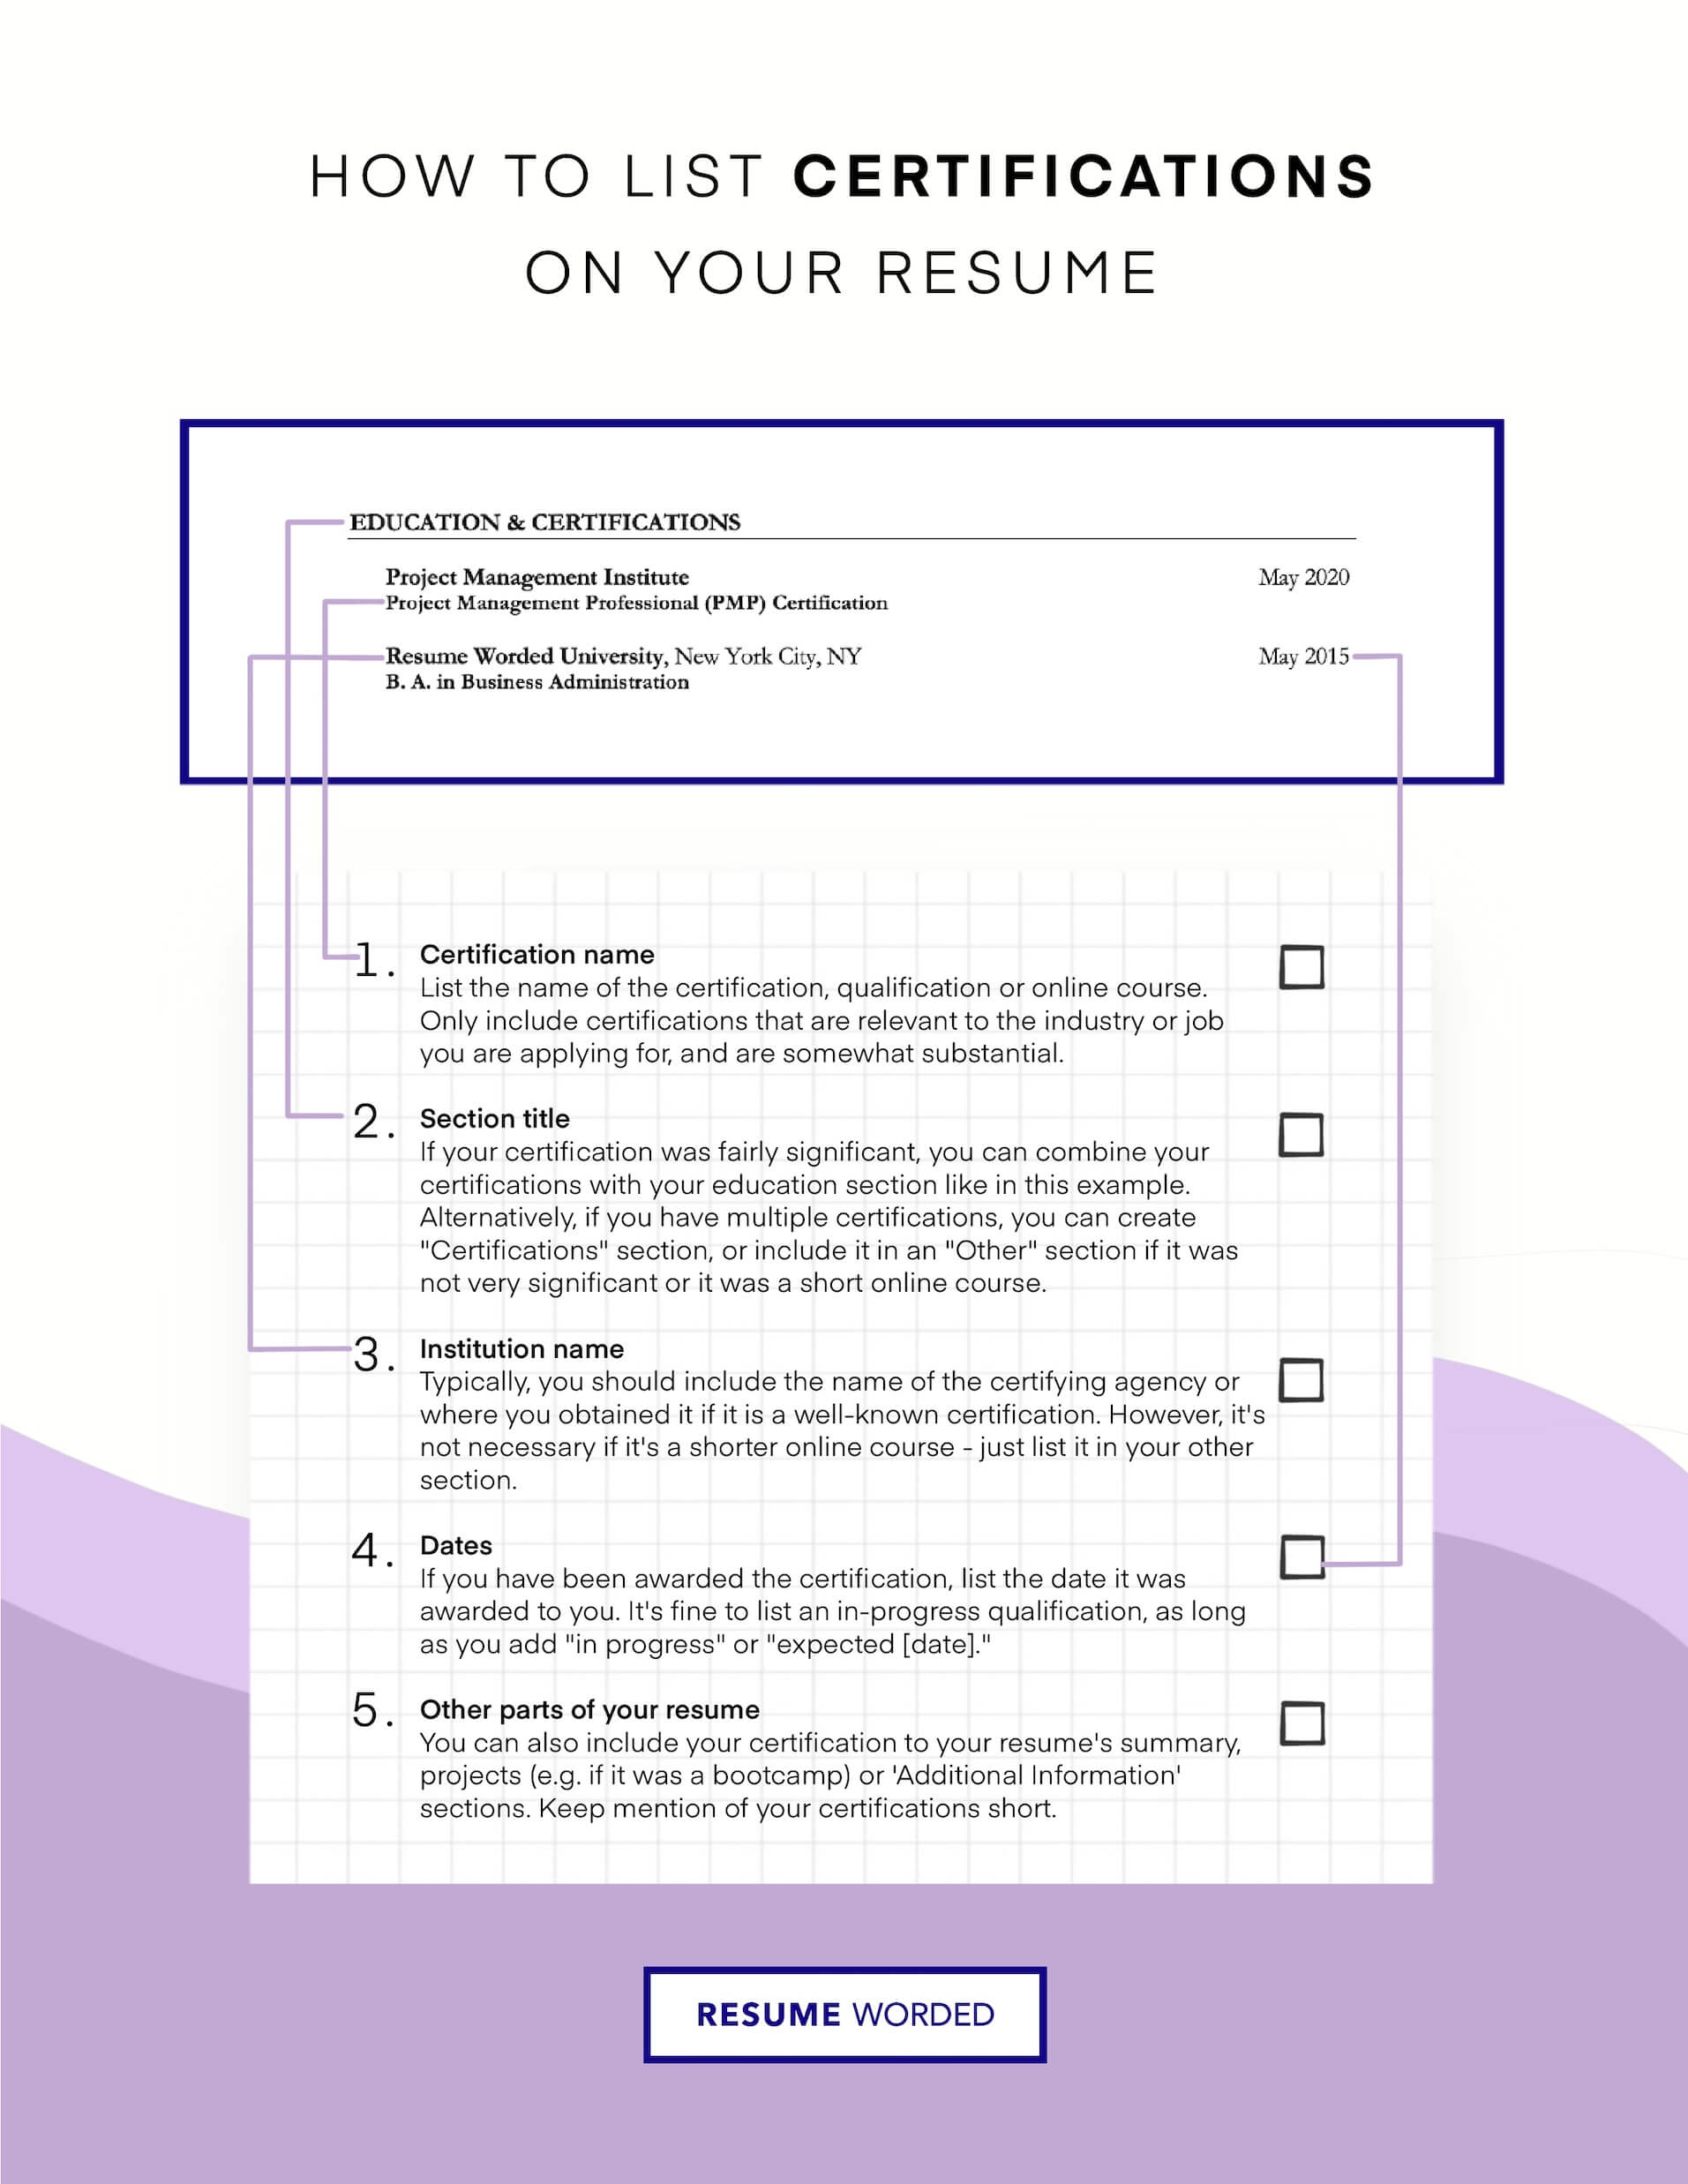 Obtain relevant certifications - Senior Scrum Master Resume